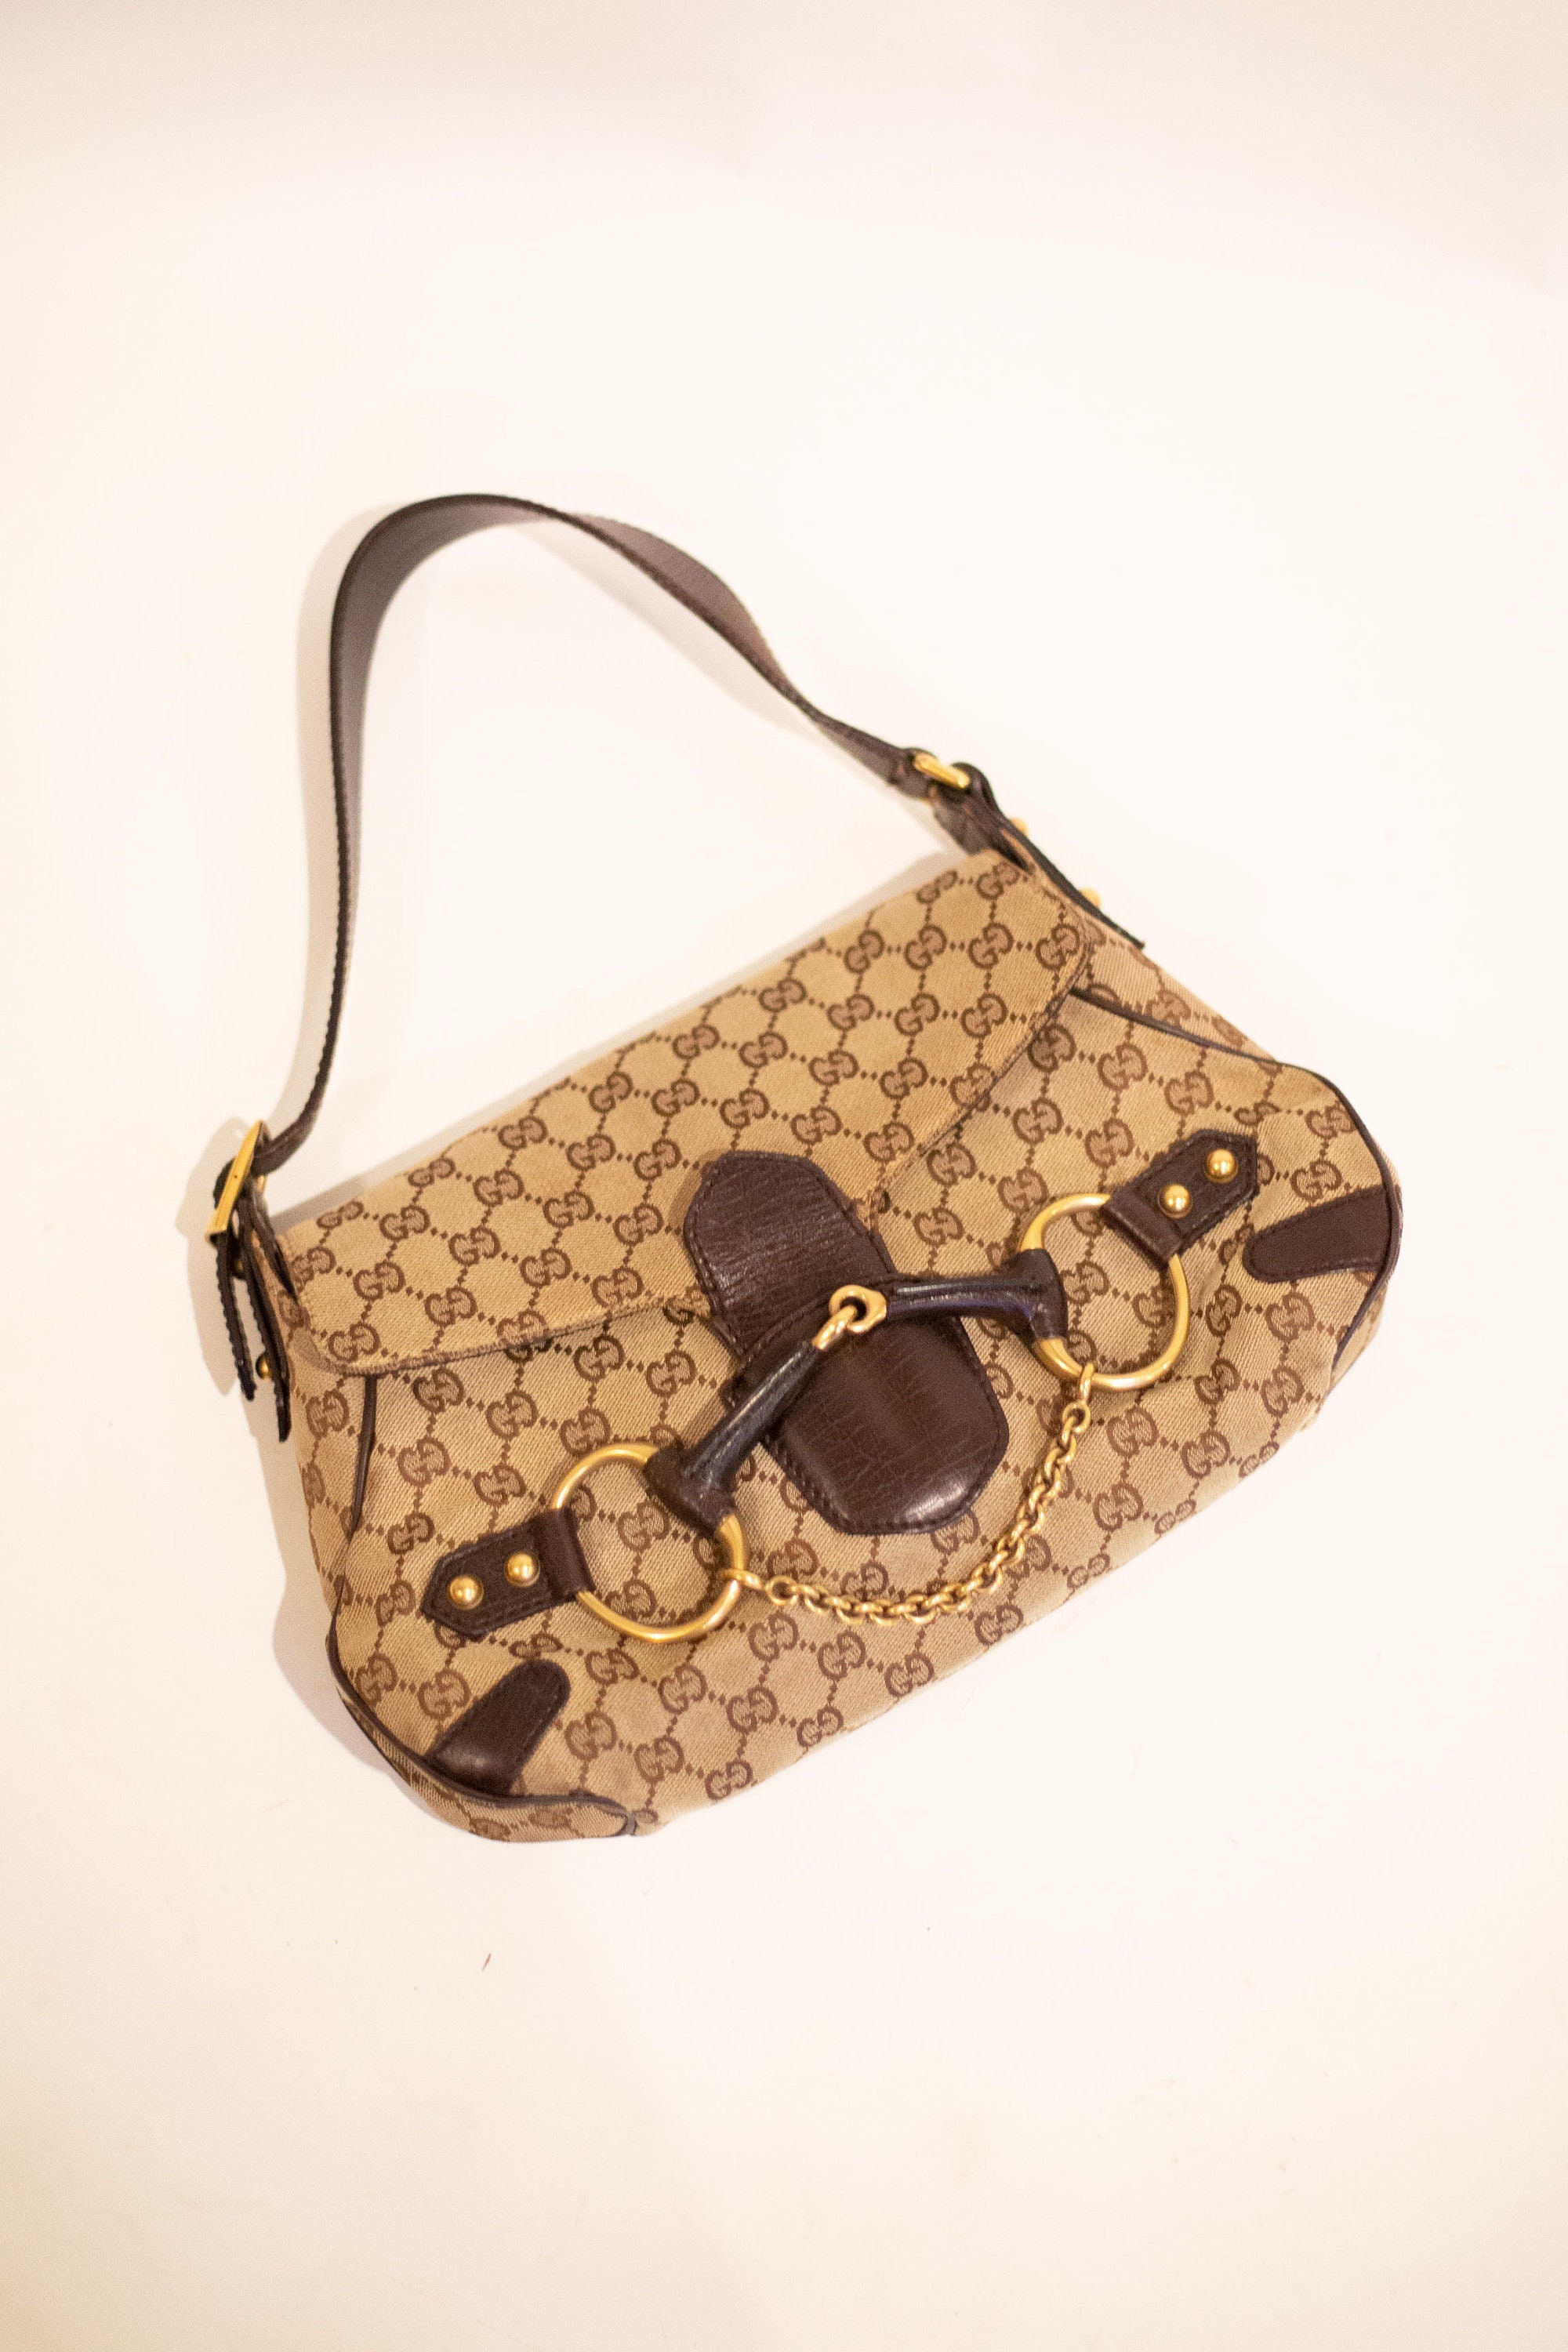 Vintage Gucci GG Canvas Handbag